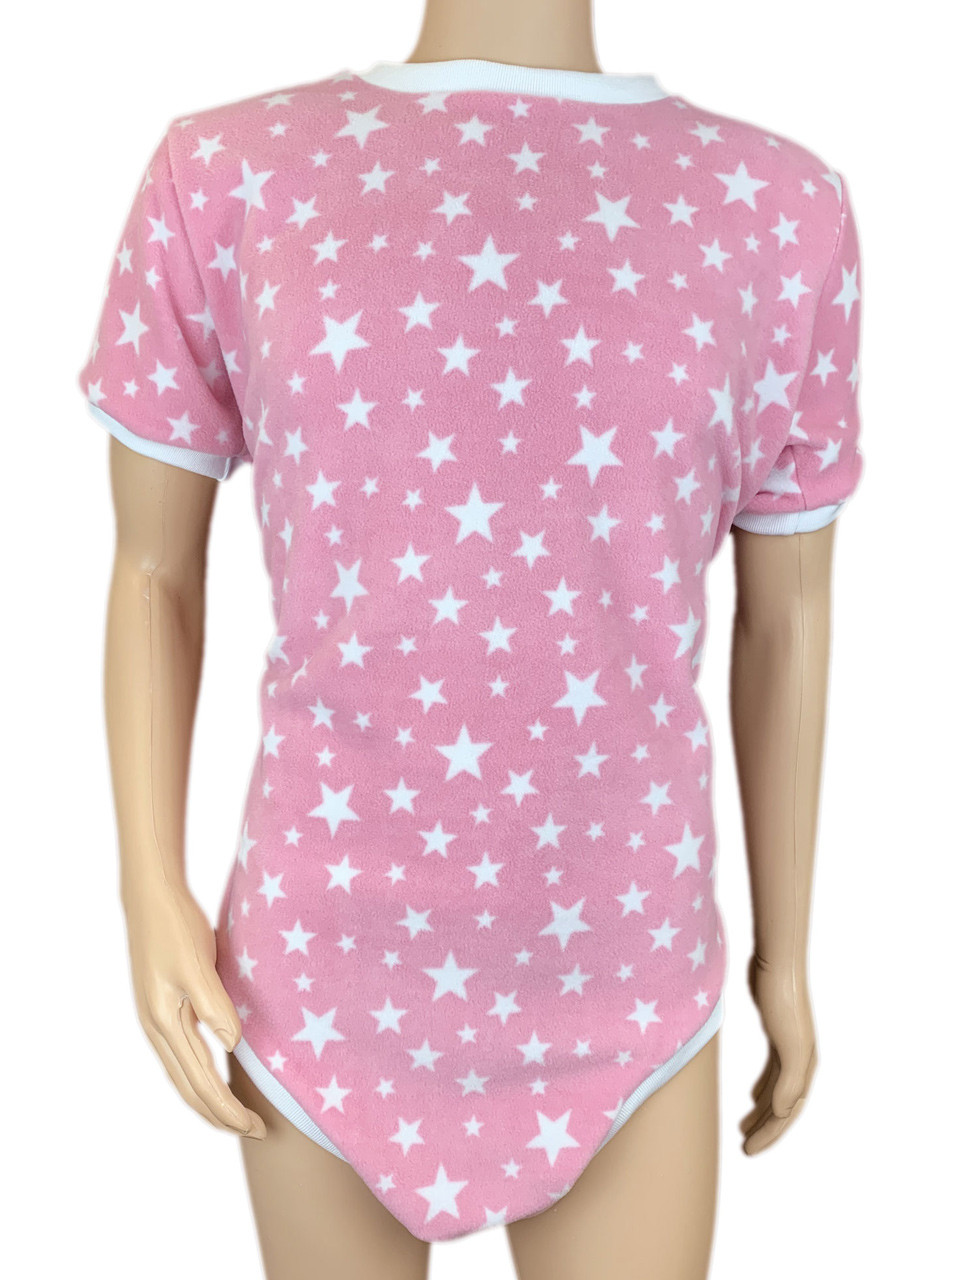 Cuddlz Baby Pink Stars Pattern Fleece Zipped Adult Onesie With Locking Zip  Option